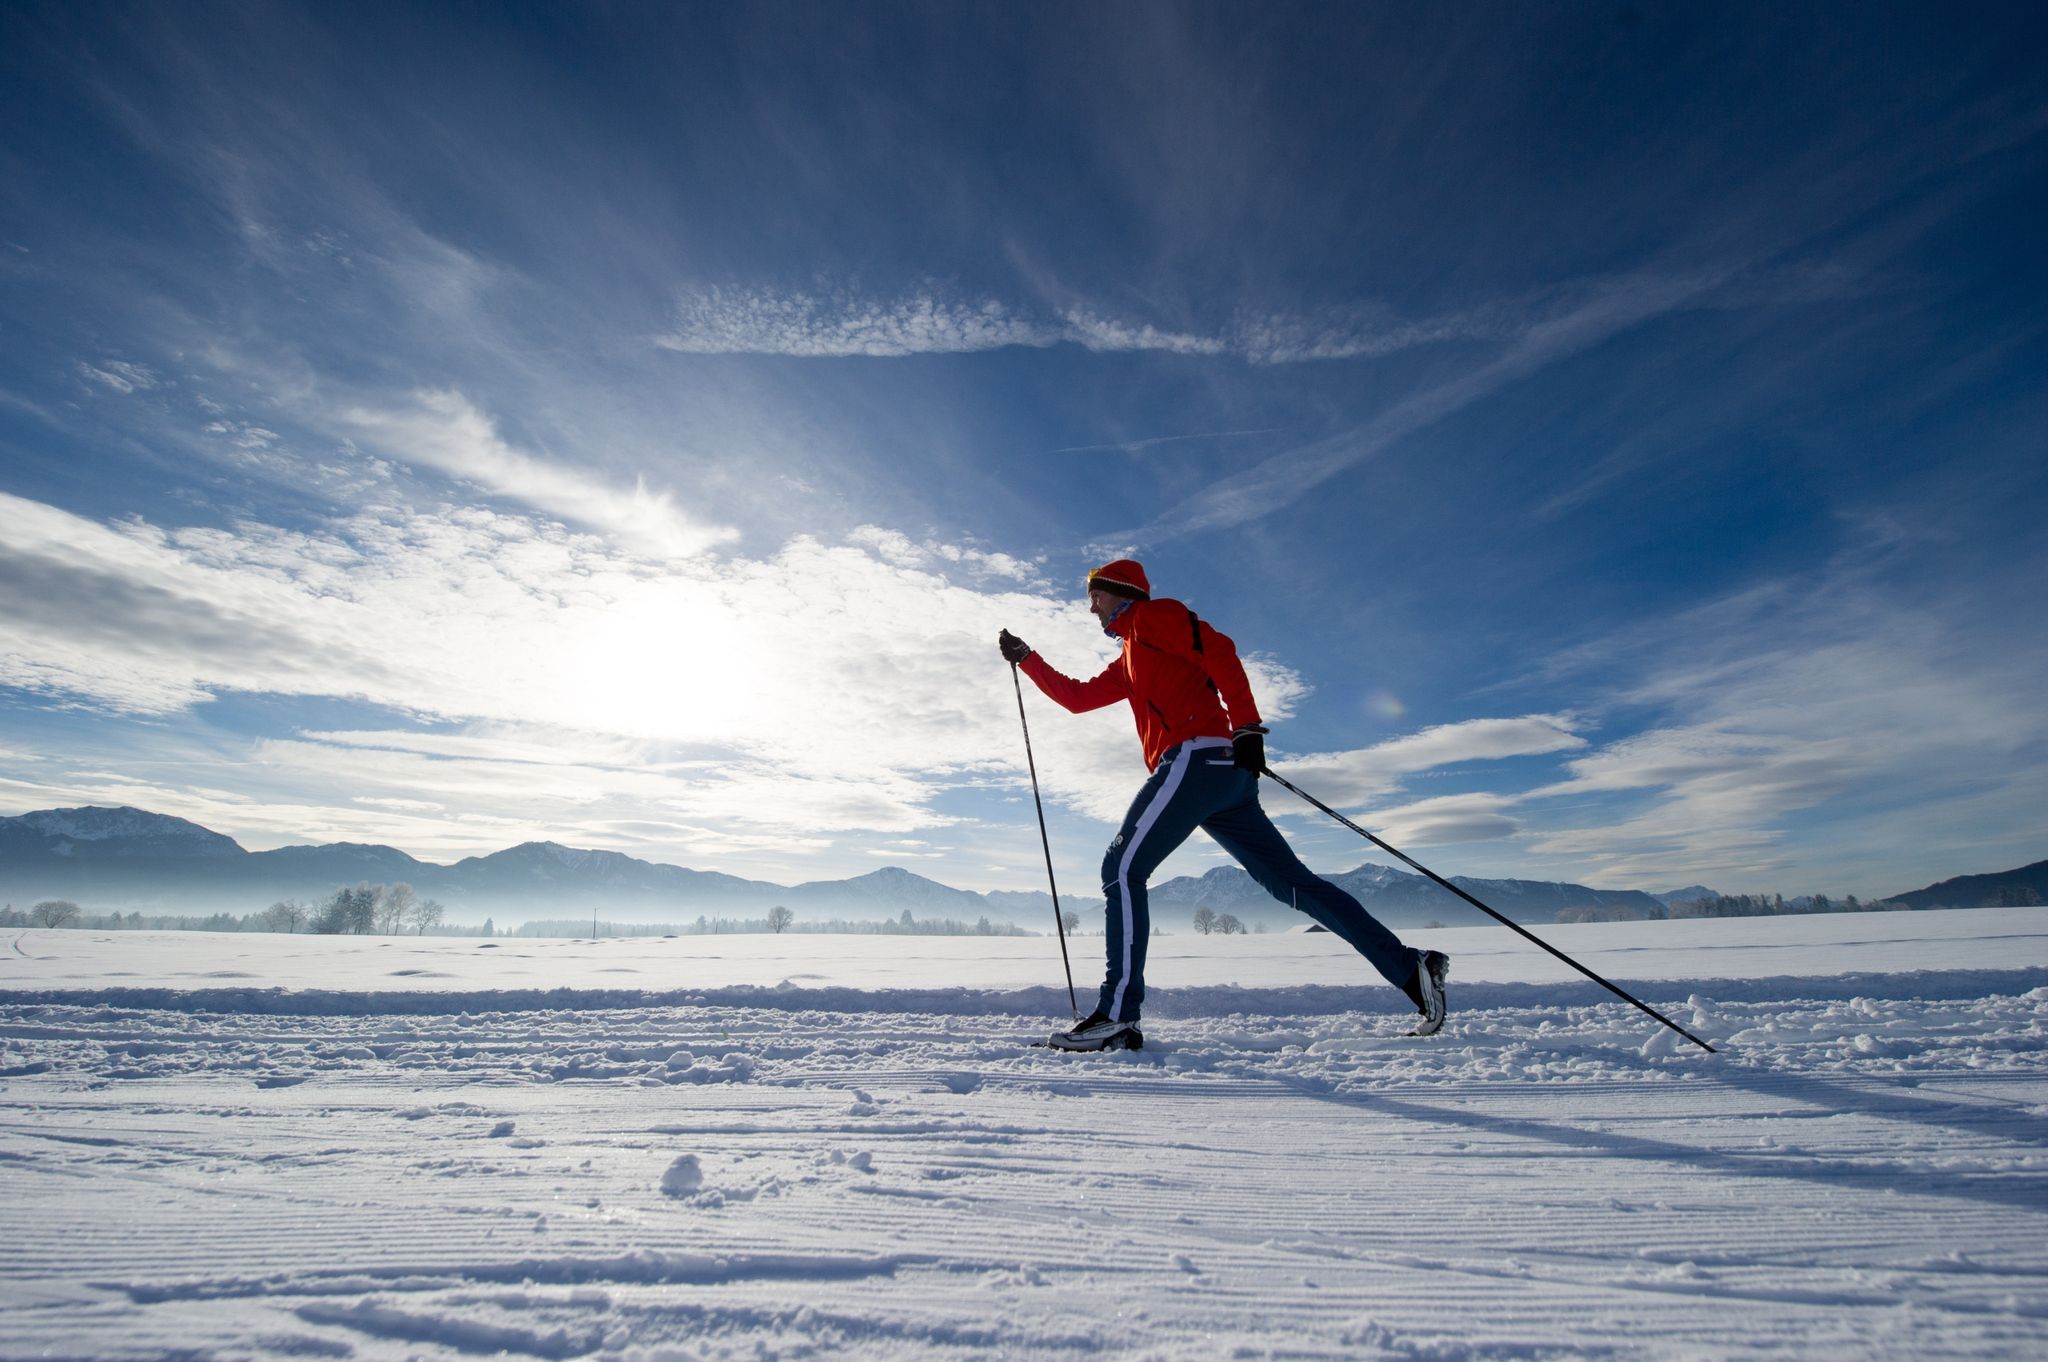 Langlaufski sind schmaler und leichter als Alpin-Ski. Welche Länge die richtige ist, hängt neben dem Fahrstil und der Körpergröße auch vom Gewicht ab.